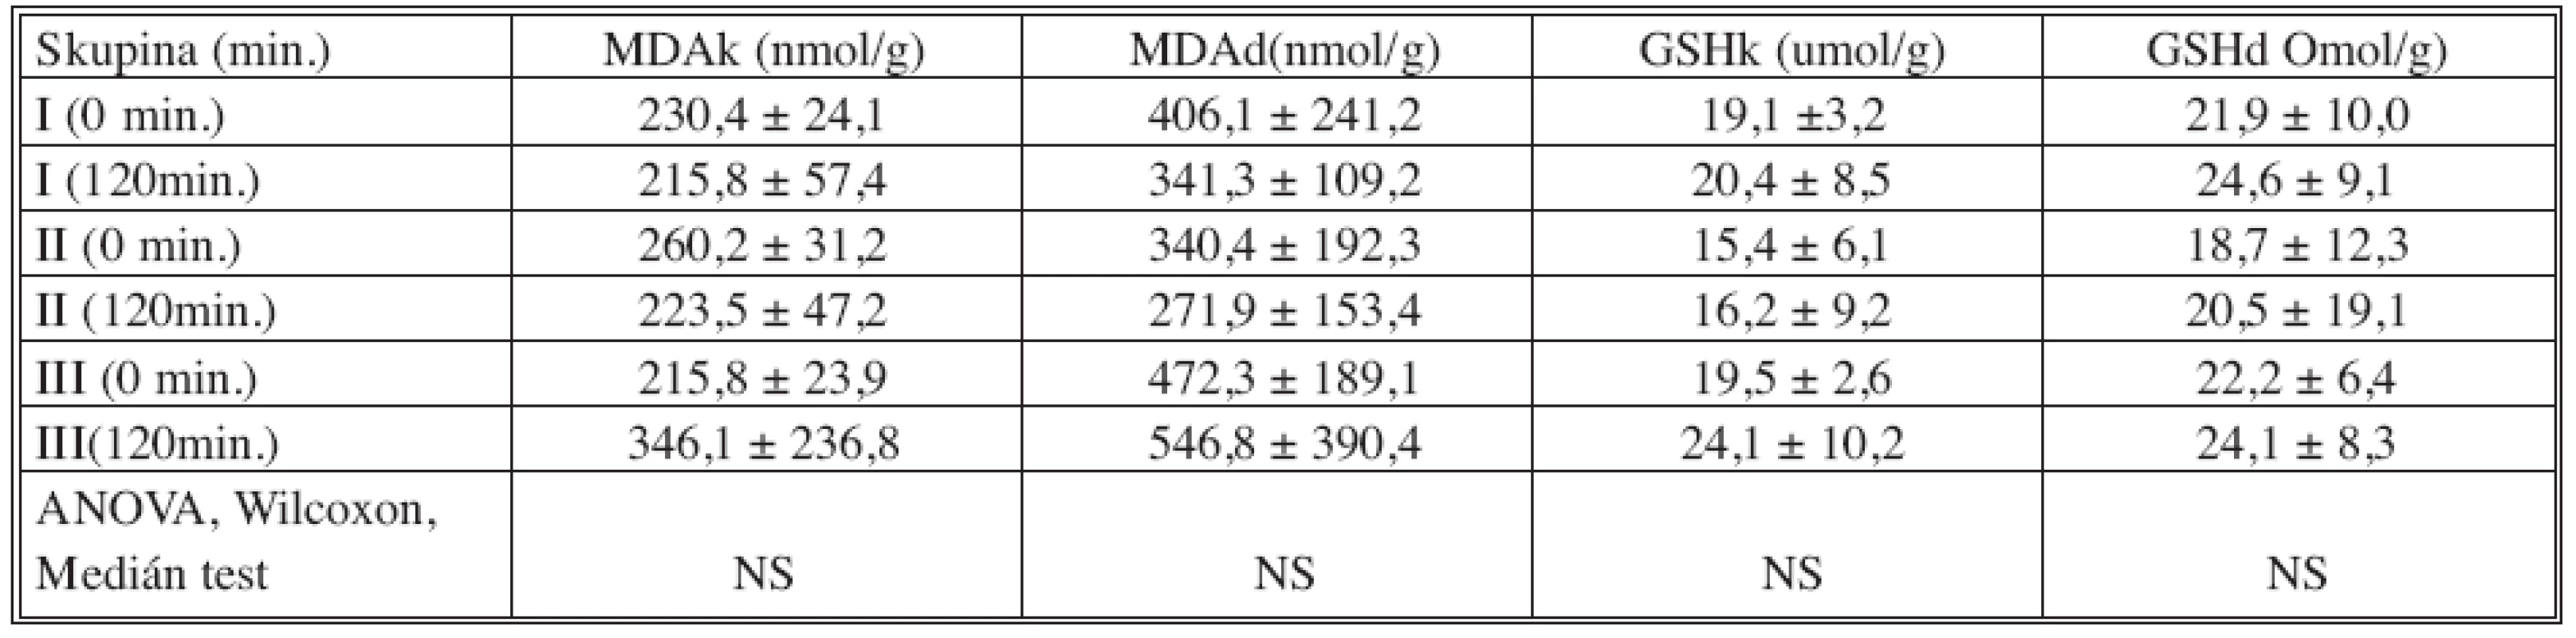 Porovnání MDA a GSH hladin v kůře (k) a dřeni (d) transplantované ledviny, před a dvě hodiny po transplantaci
Tab. 3. Comparison between MDA and GSH levels in the cortex (k) and the medulla (d) of transplanted kidney, prior toand two hours following transplantation